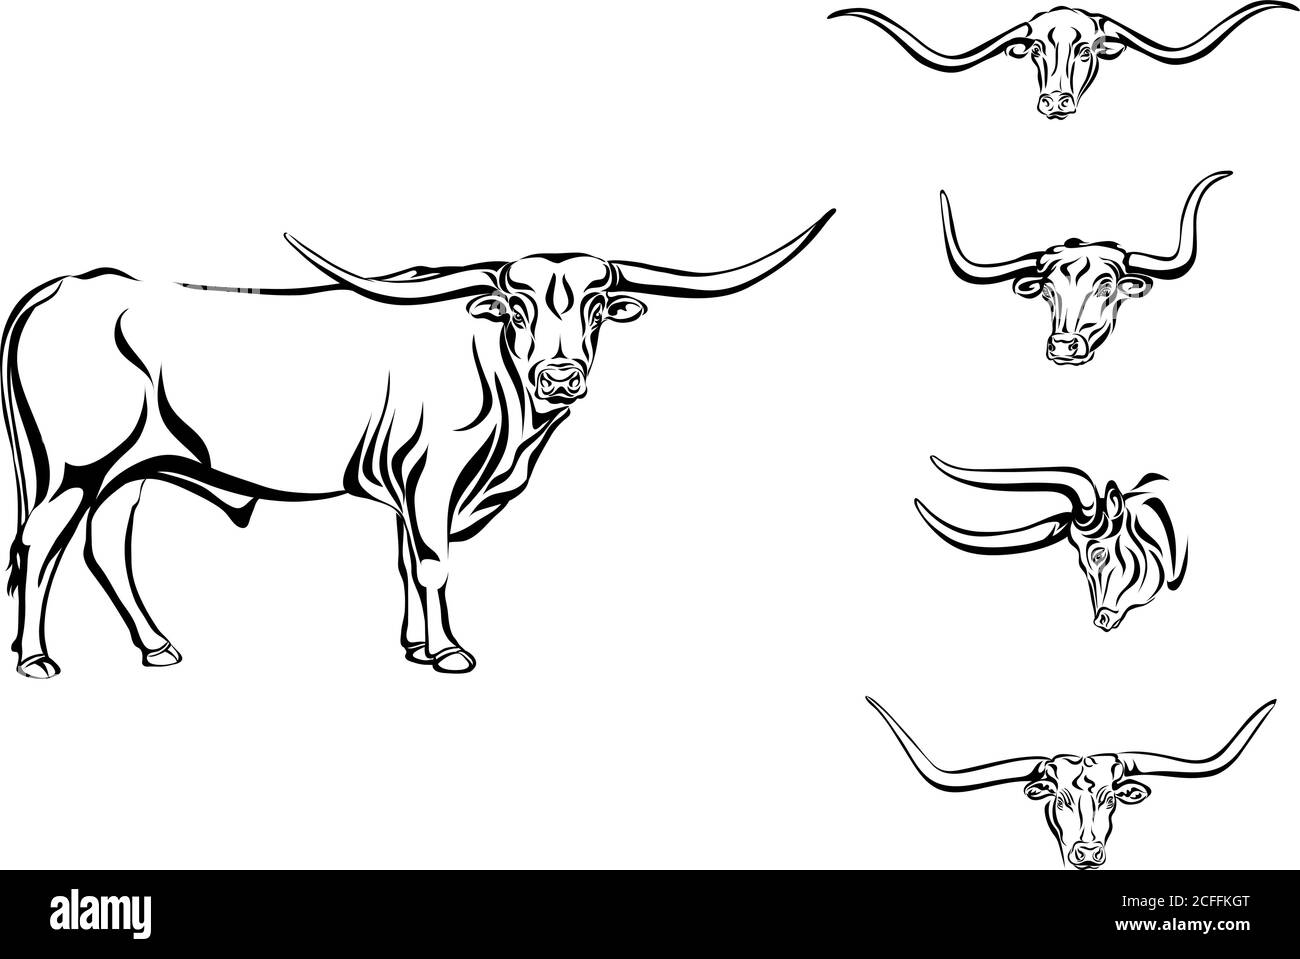 búfalo, toro, cabeza, cuernos, vector, imagen, dibujo, negro, animal, cría de animales, cría de ganado, aislado, ilustración, pezuñas, grande, línea, mamífero Ilustración del Vector